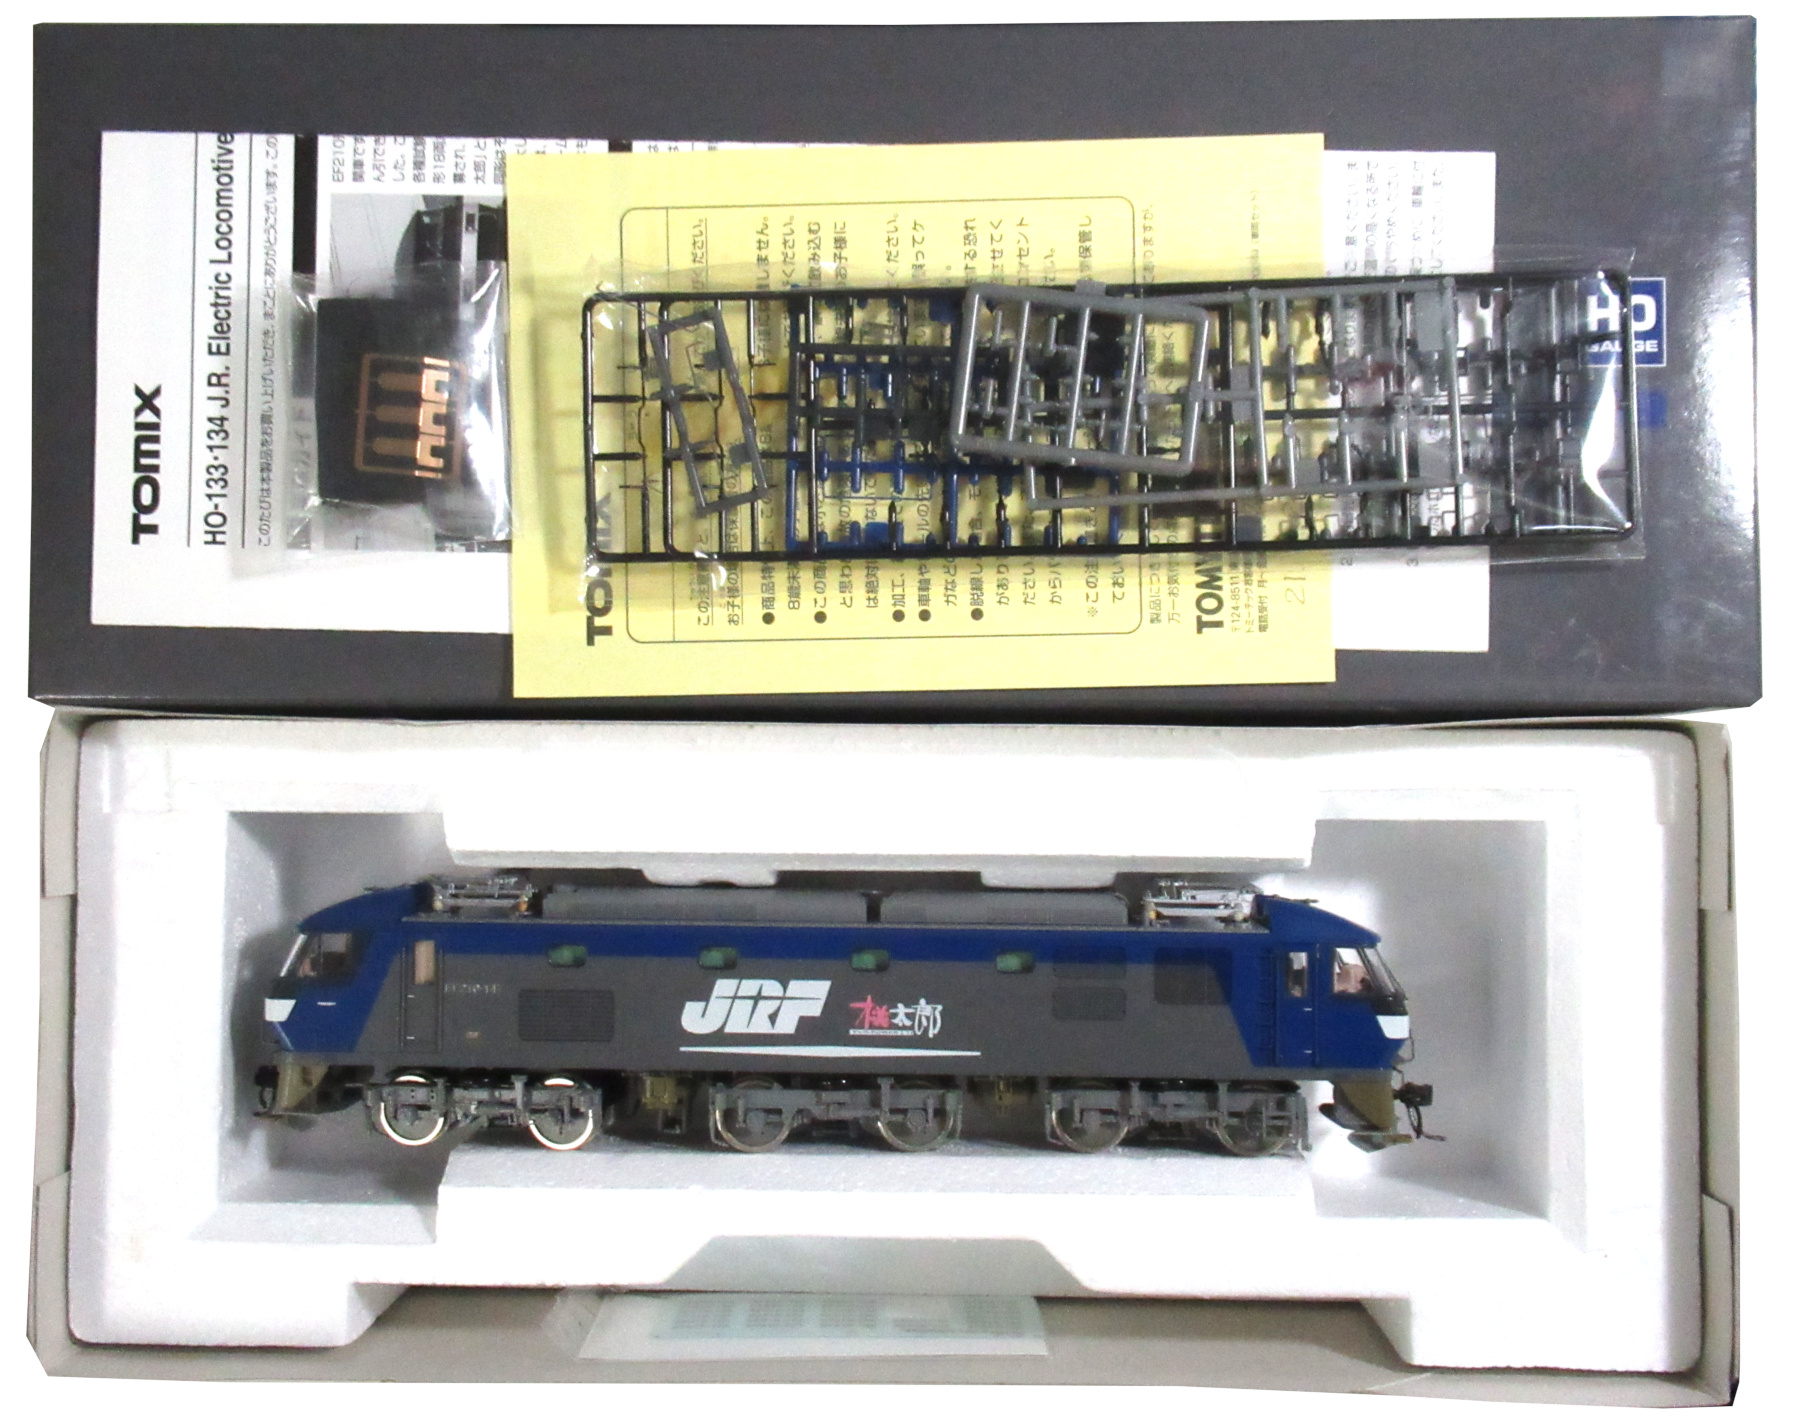 公式]鉄道模型(HO-134JR EF210-100形電気機関車 (シングルアーム 